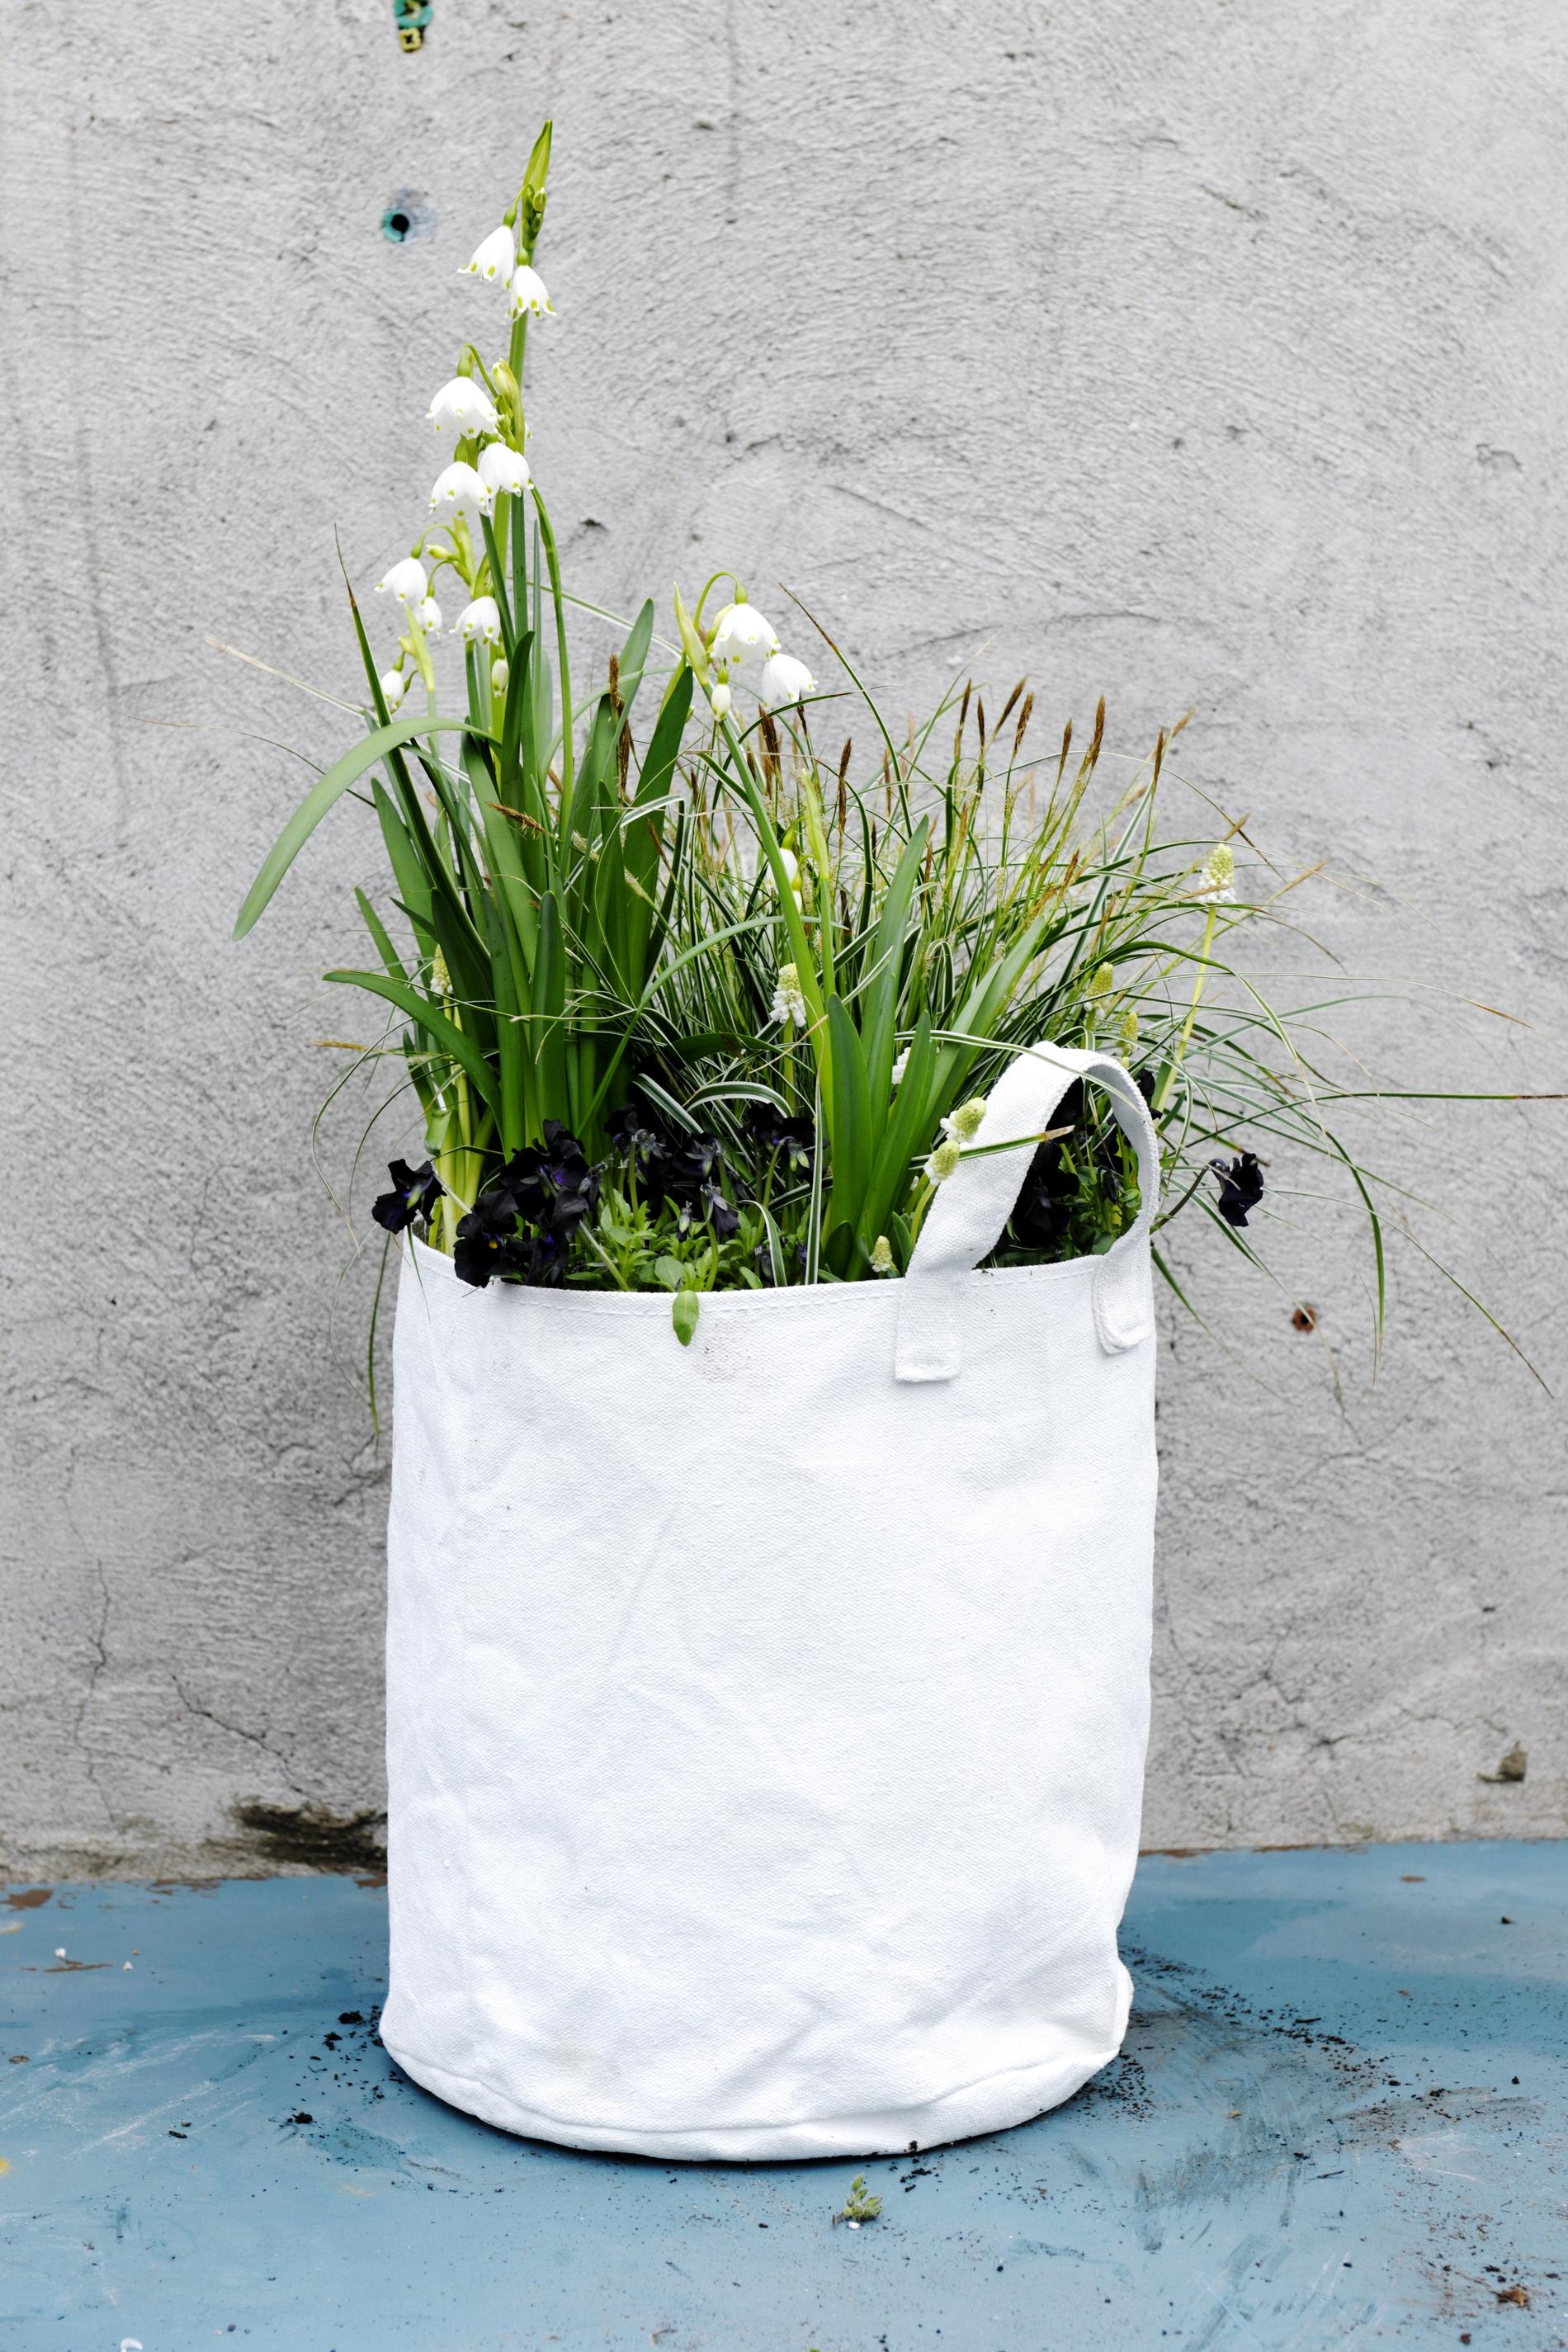 Du behöver:

 Planteringskasse


Lecakulor 


Krukjord 


Carex, brokig 


Svart viol


Sommarsnöklocka 


Vit pärlhyacint